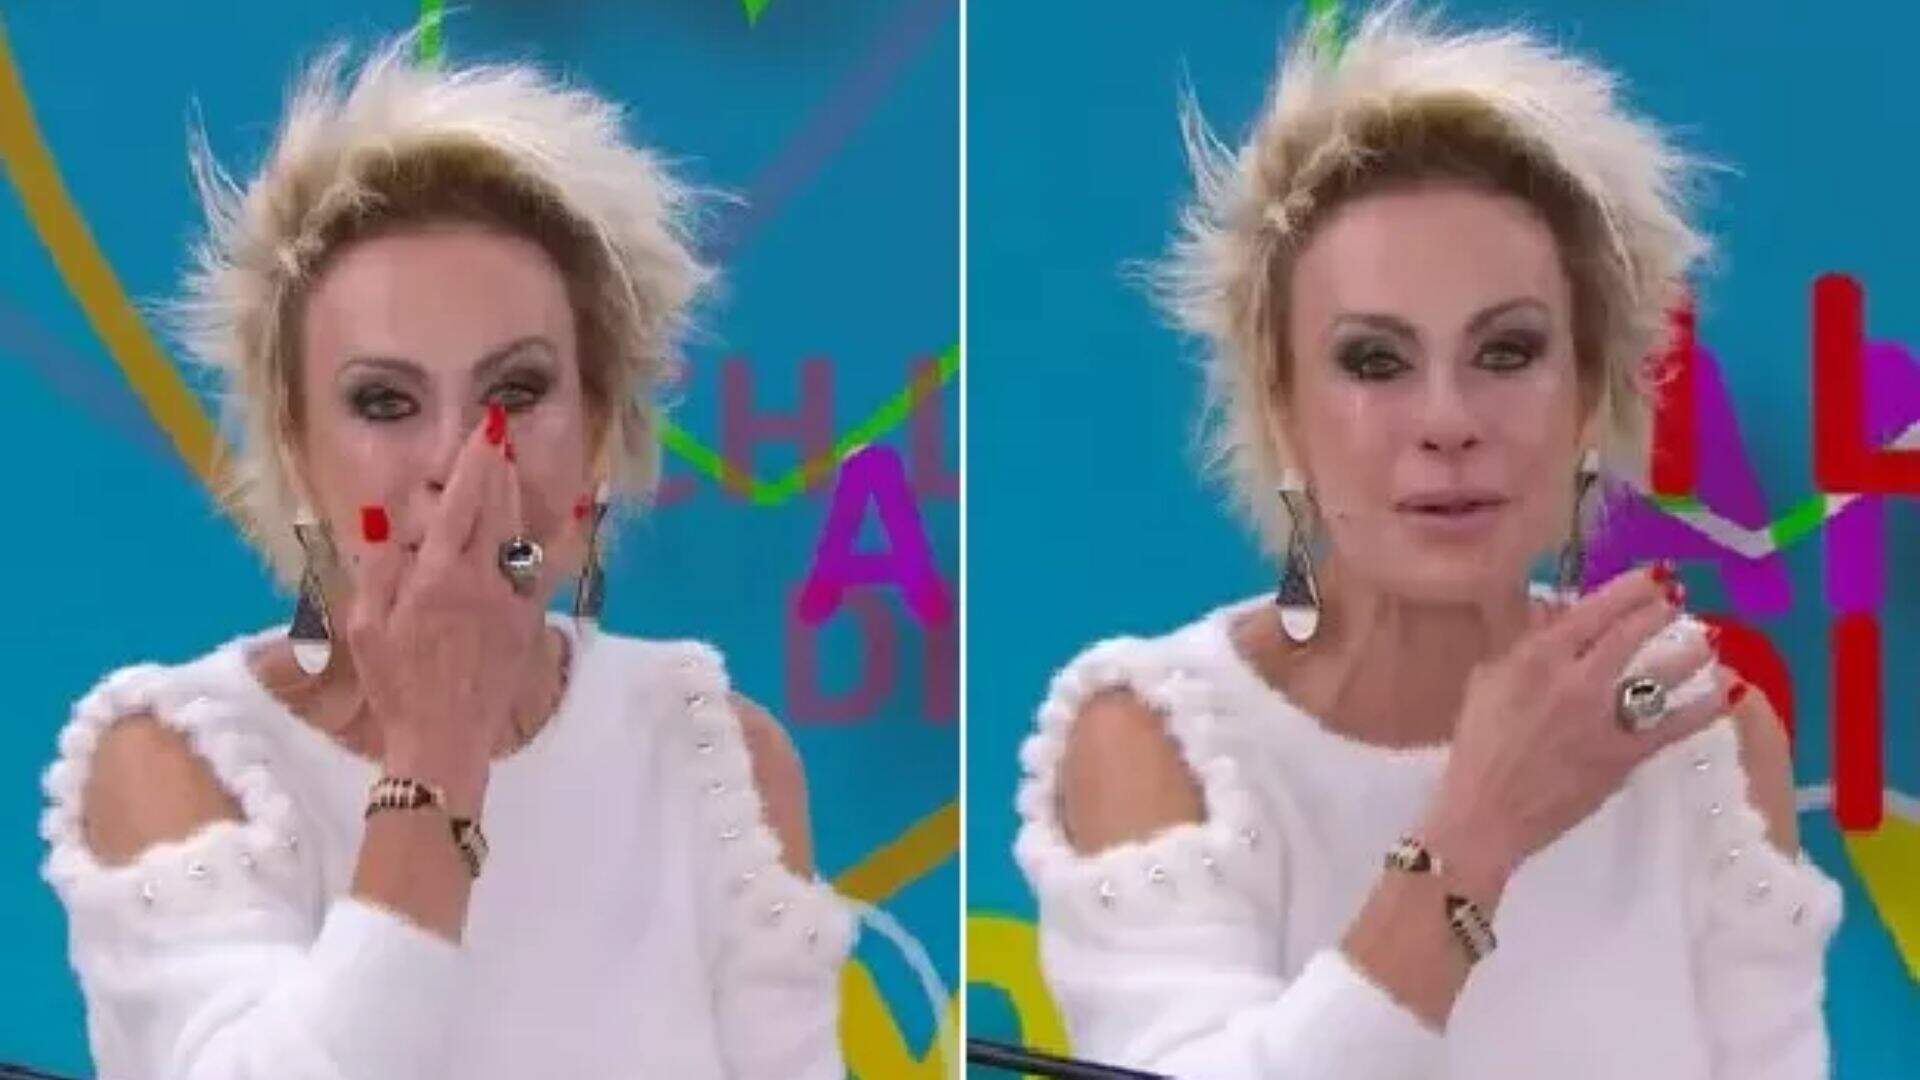 Ana Maria Braga chora ao vivo, não consegue se conter e faz desabafo: “Chorar por amor” - Metropolitana FM